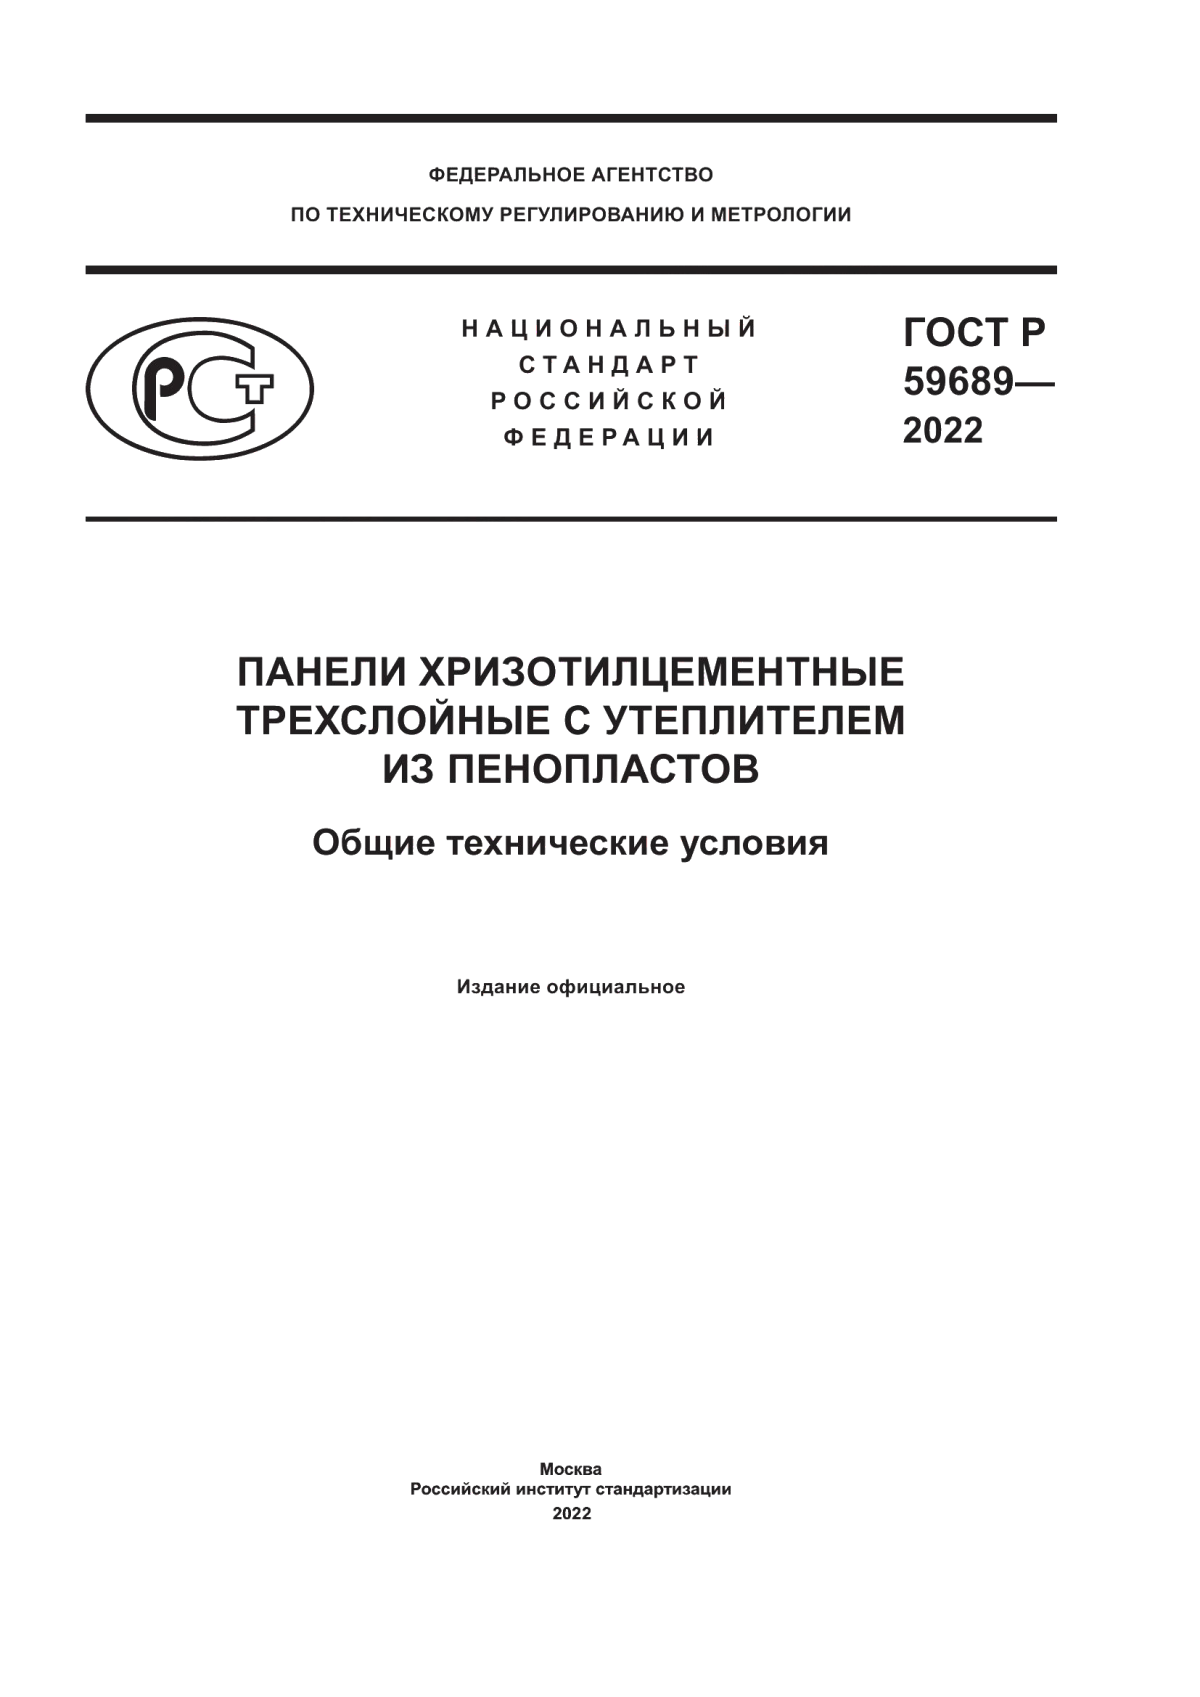 ГОСТ Р 59689-2022 Панели хризотилцементные трехслойные с утеплителем из пенопластов. Общие технические условия